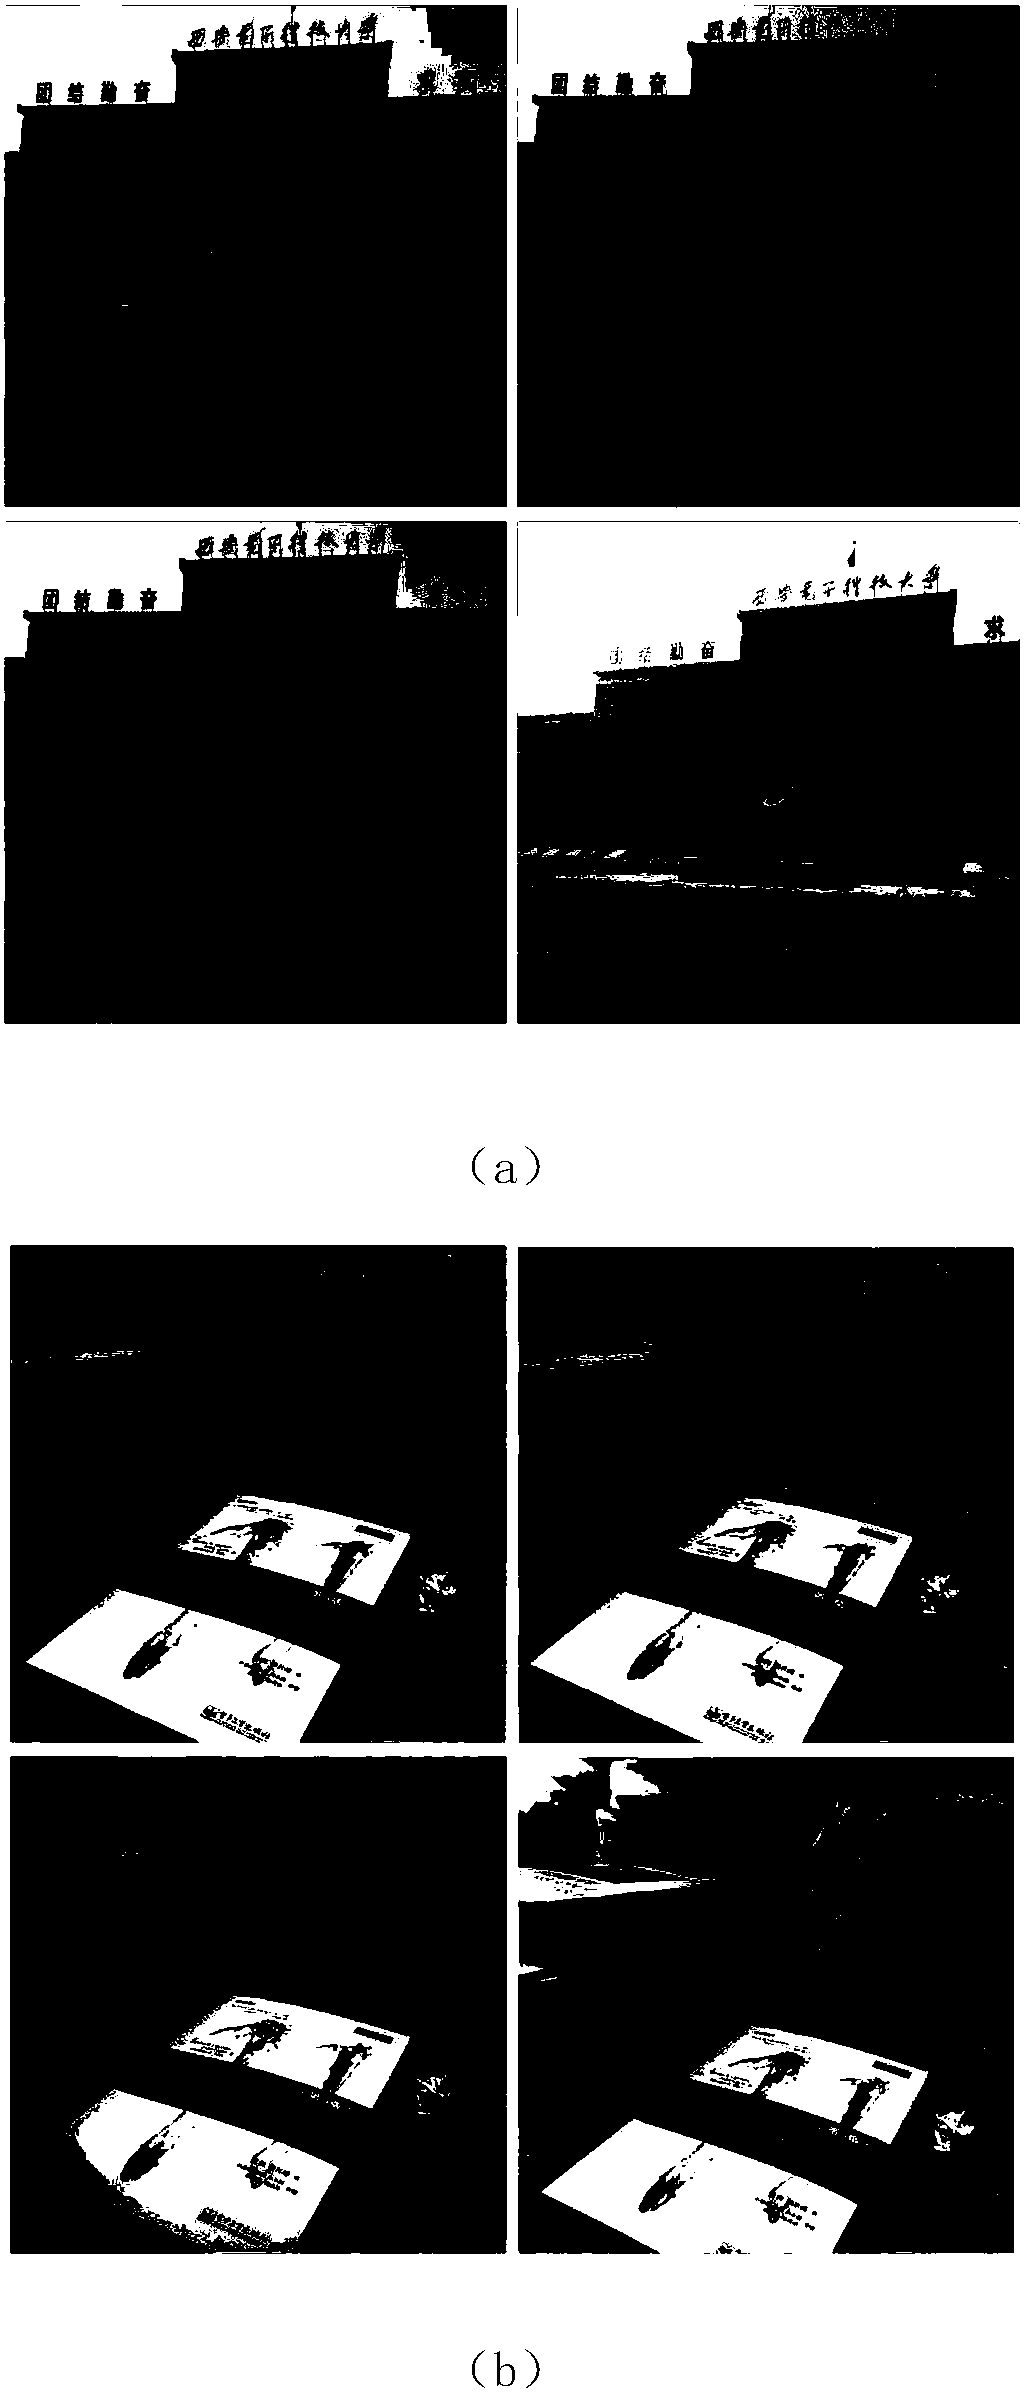 Group image coding method based on quadratic fitting luminosity transform